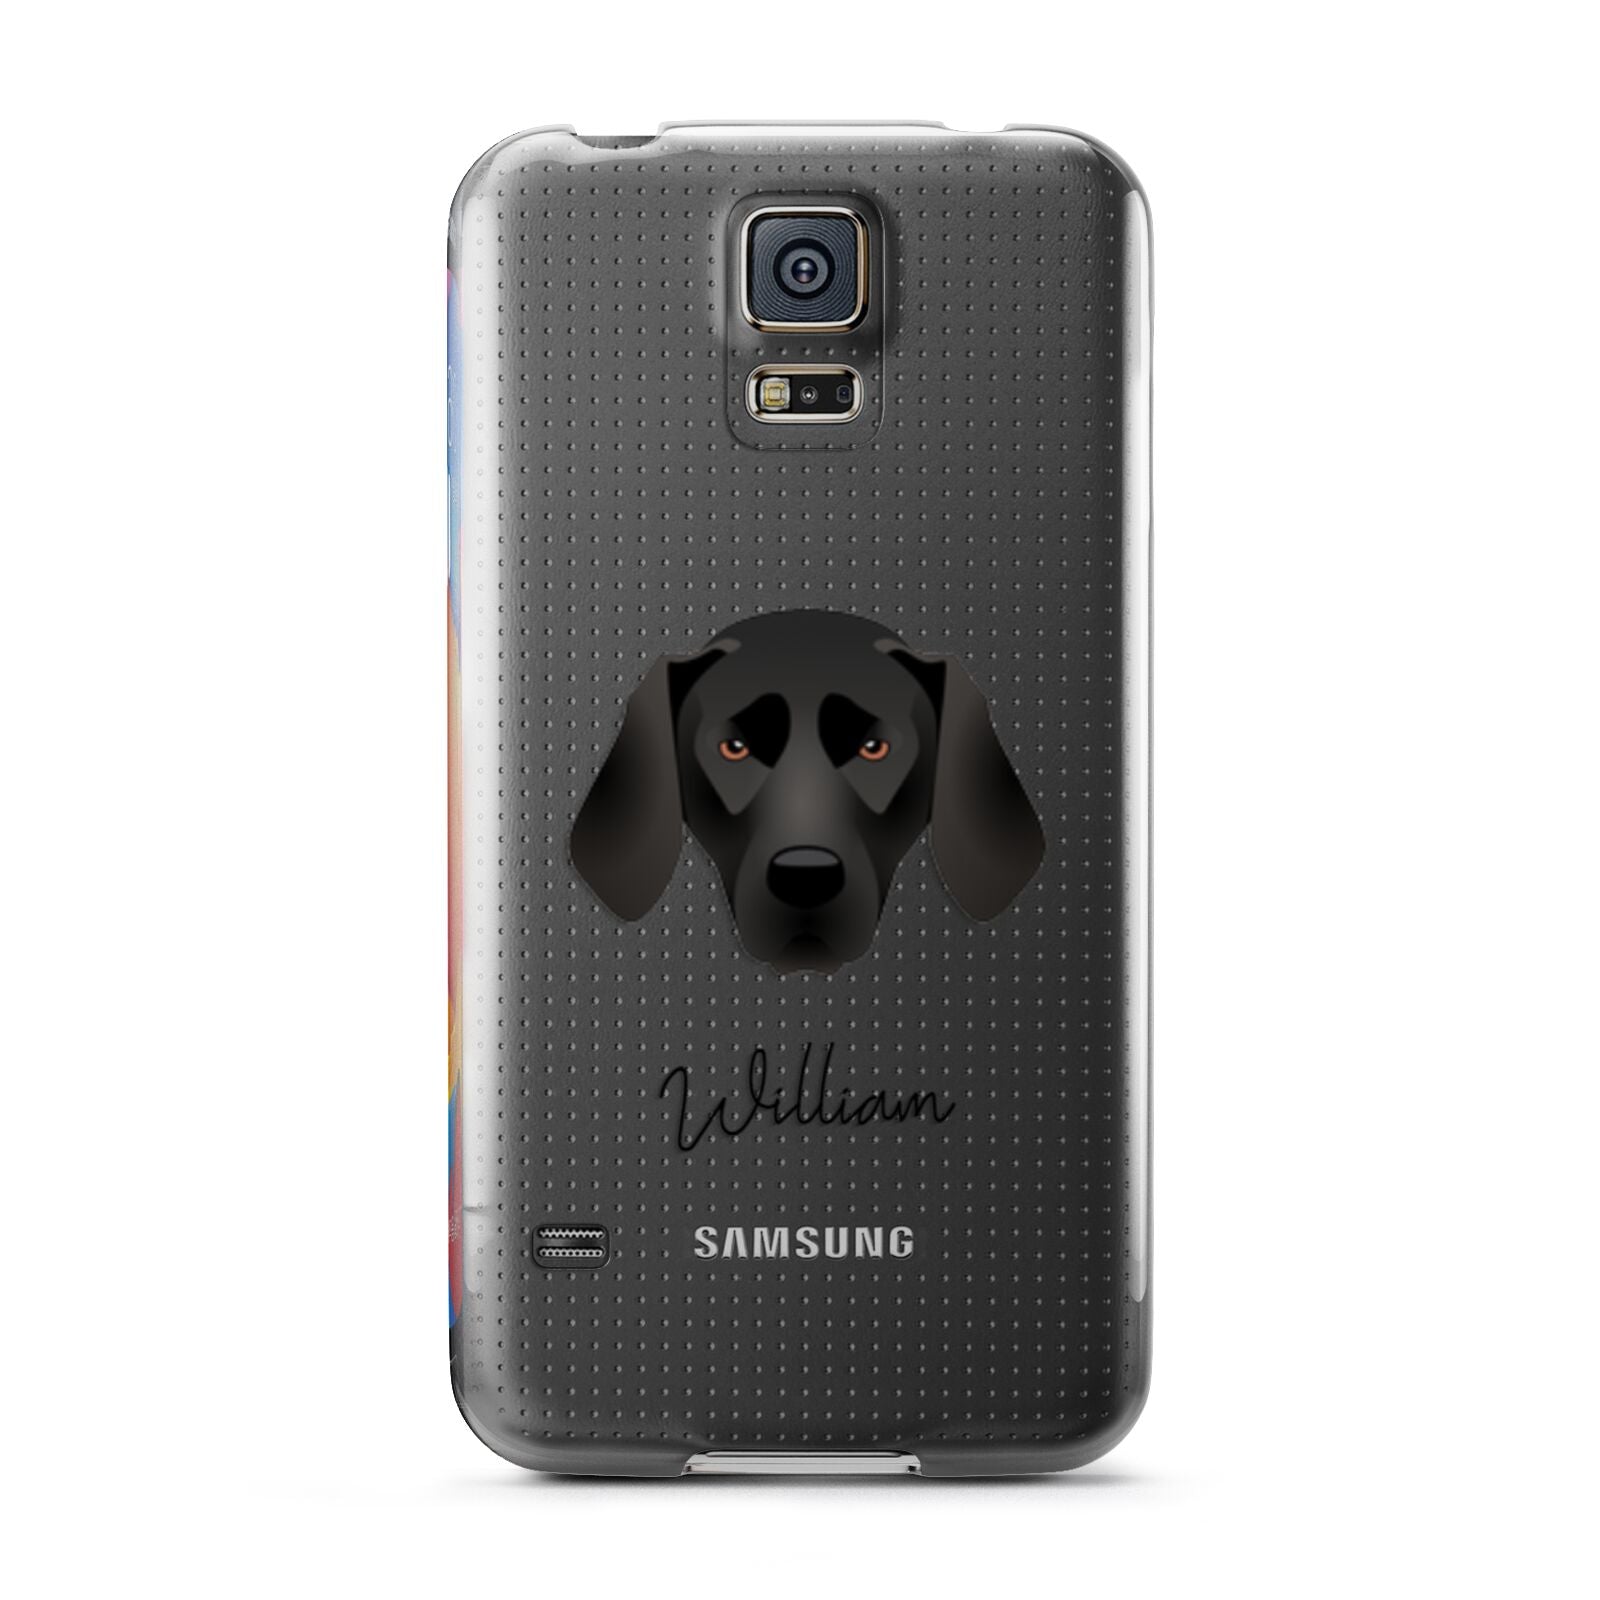 Plott Hound Personalised Samsung Galaxy S5 Case